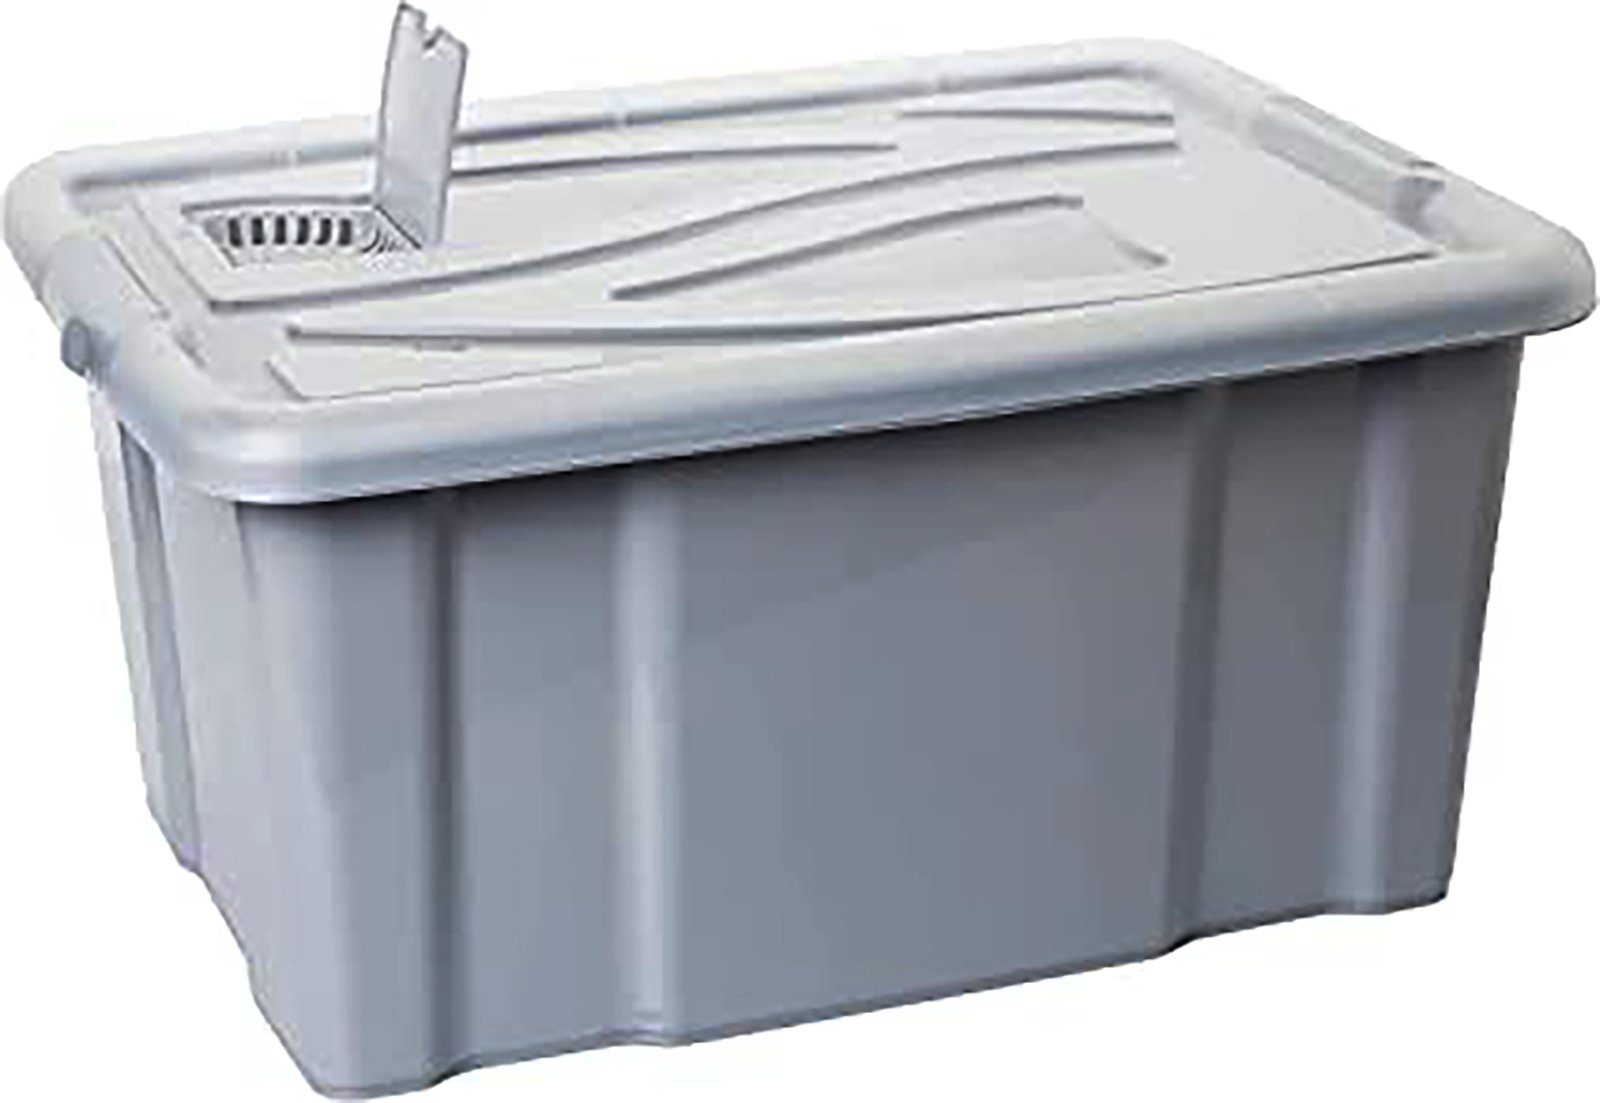 Centi Stapelbox 2 Stk. Aufbewahrungsbox mit Deckel 60L, Aufbewahrungsboxen, (Stk., 2 St., 61L x 45B x 31H cm 60 L), Aufbewahrung mit Deckel, Griffen und Lüftungsklappe, Farbe Grau